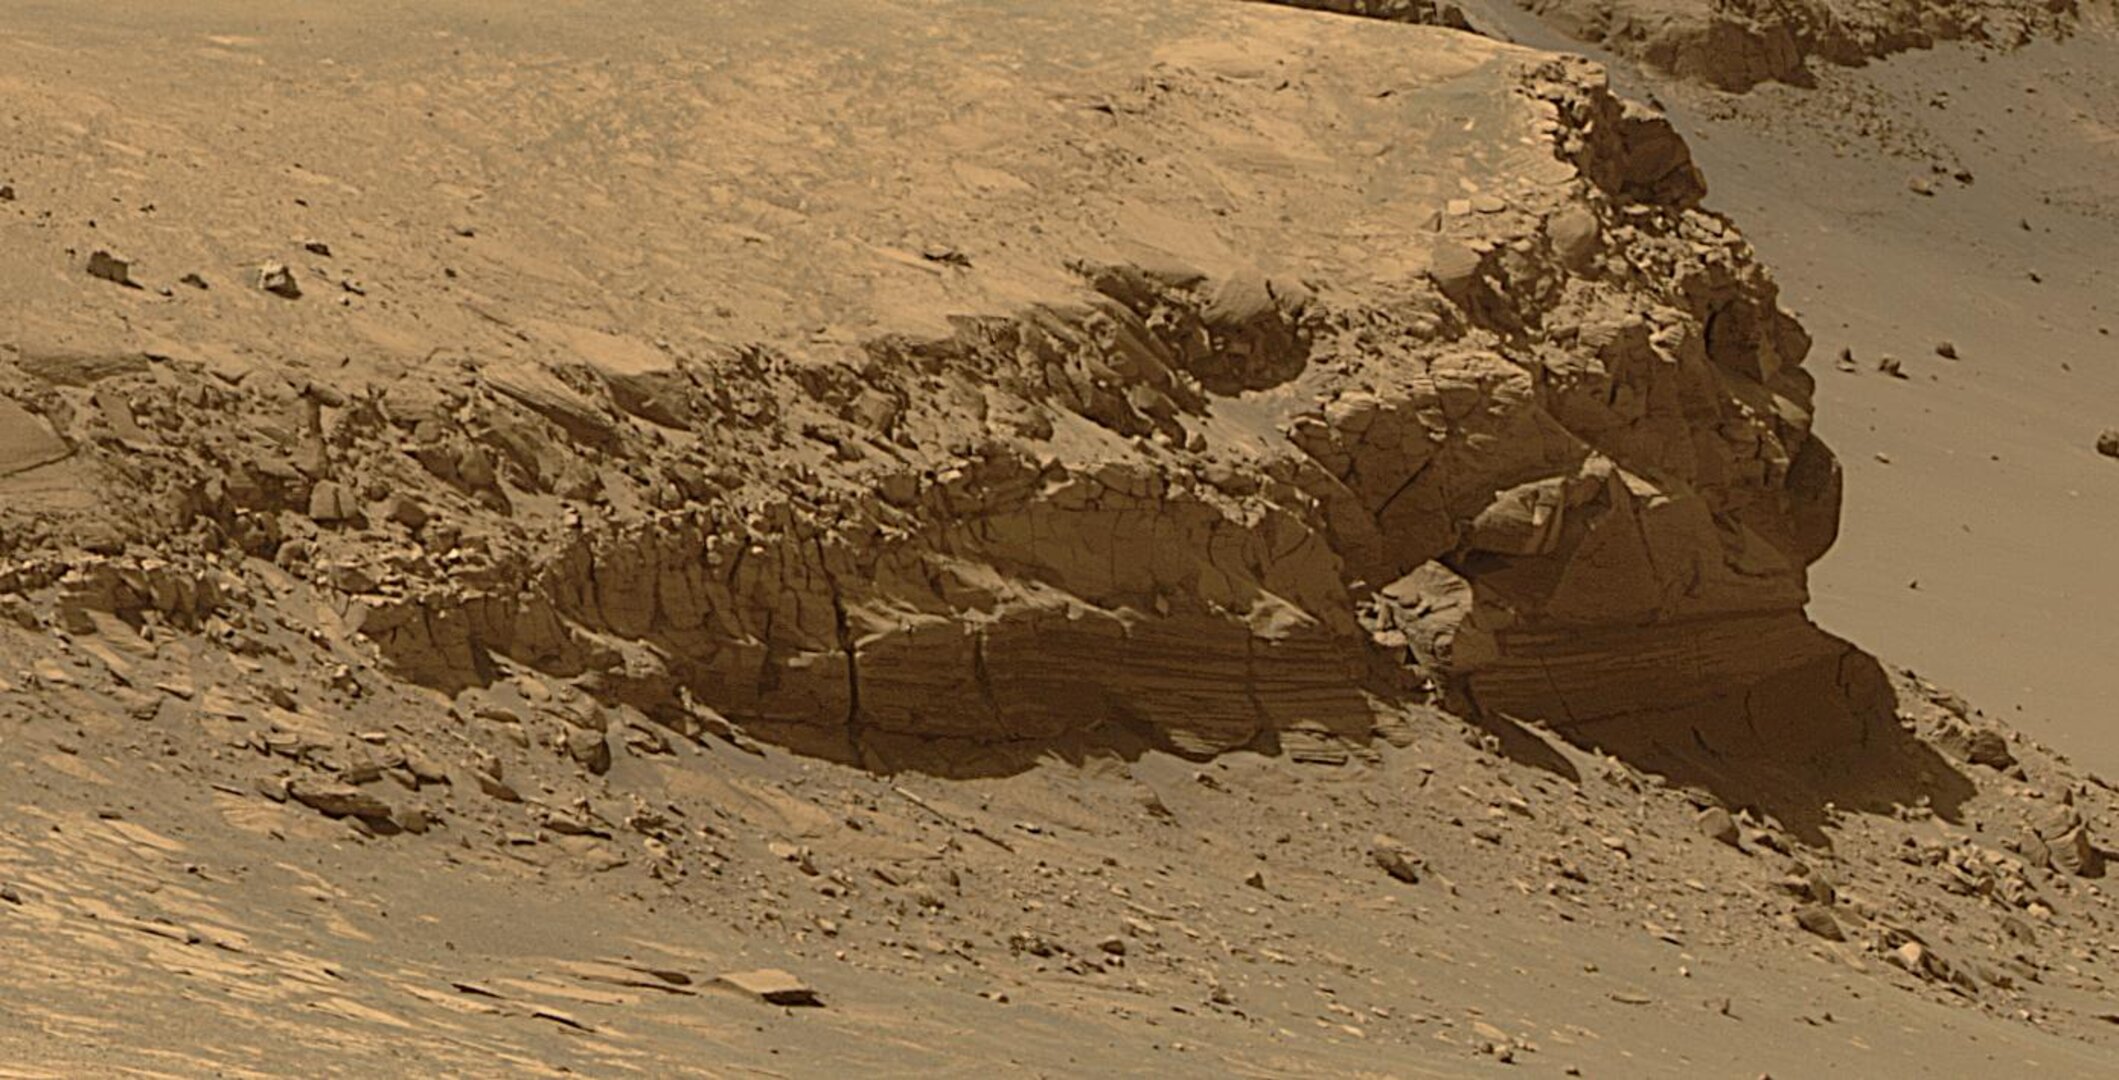 Forskarna har inte hittat de spår de hoppats på efter Mars förmodade urtidsatmosfär uppbundet i mineraler i marken